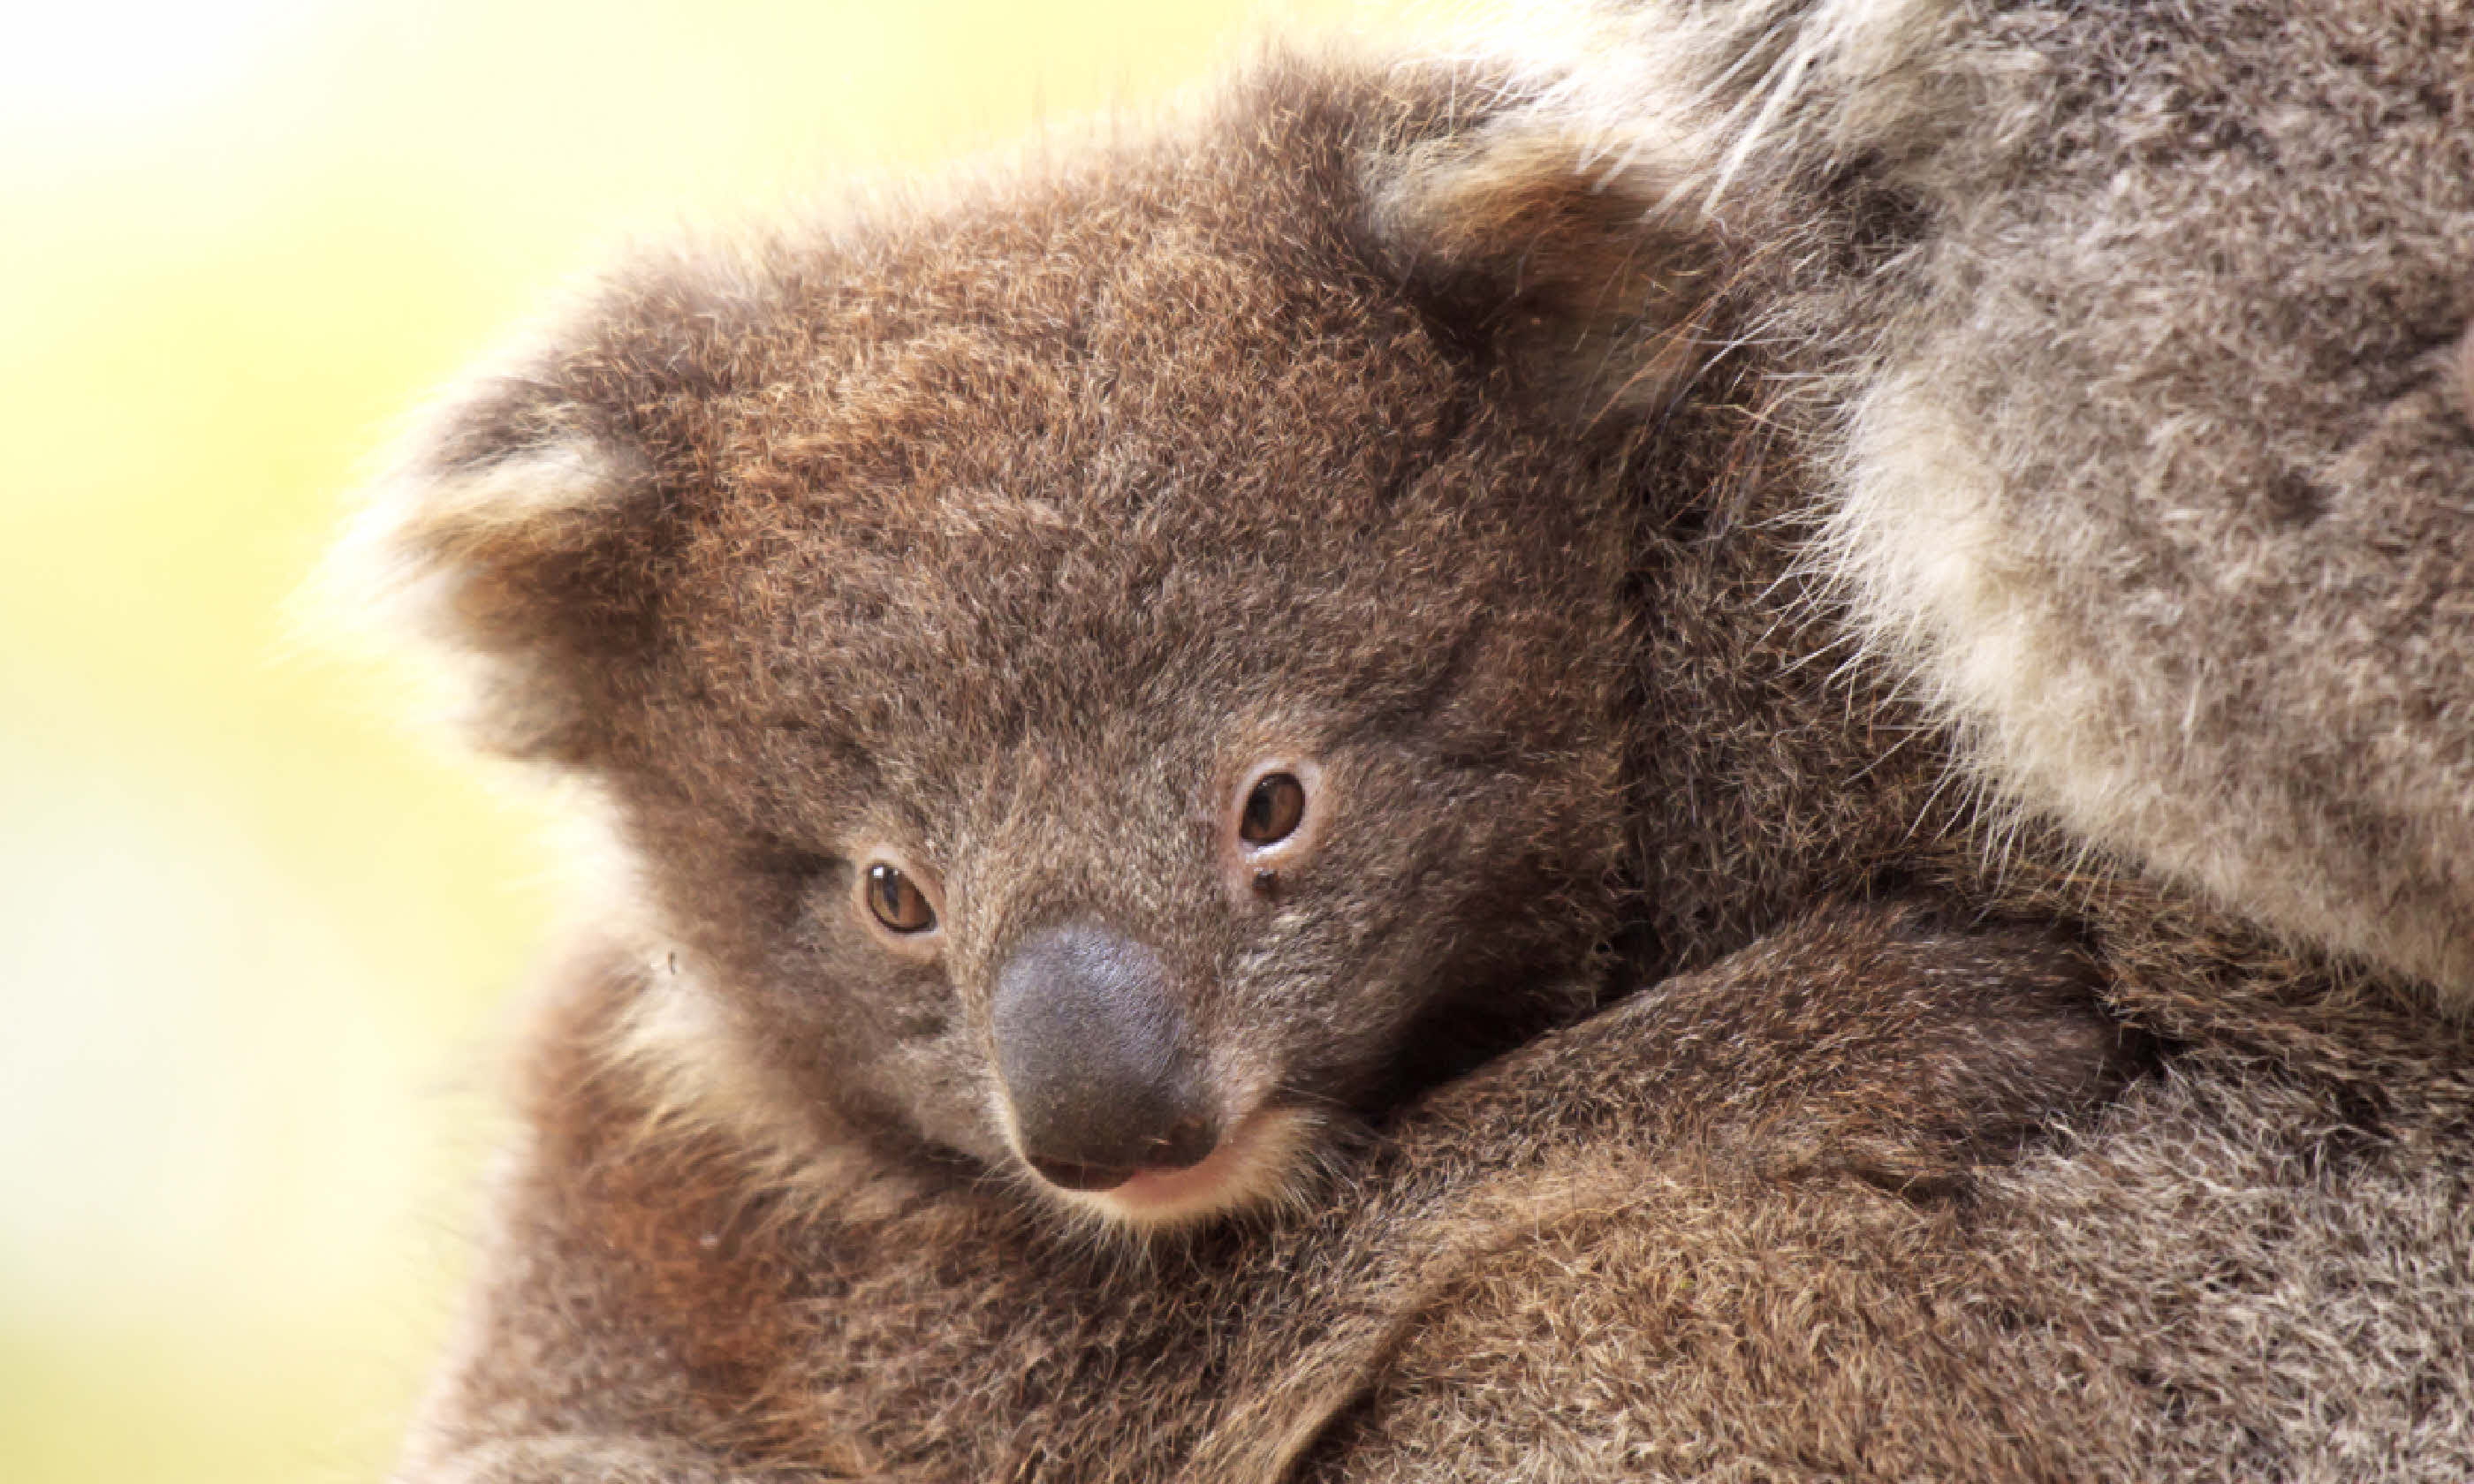 Baby Koala on Mother's Back - Kangaroo Island (Shutterstock)